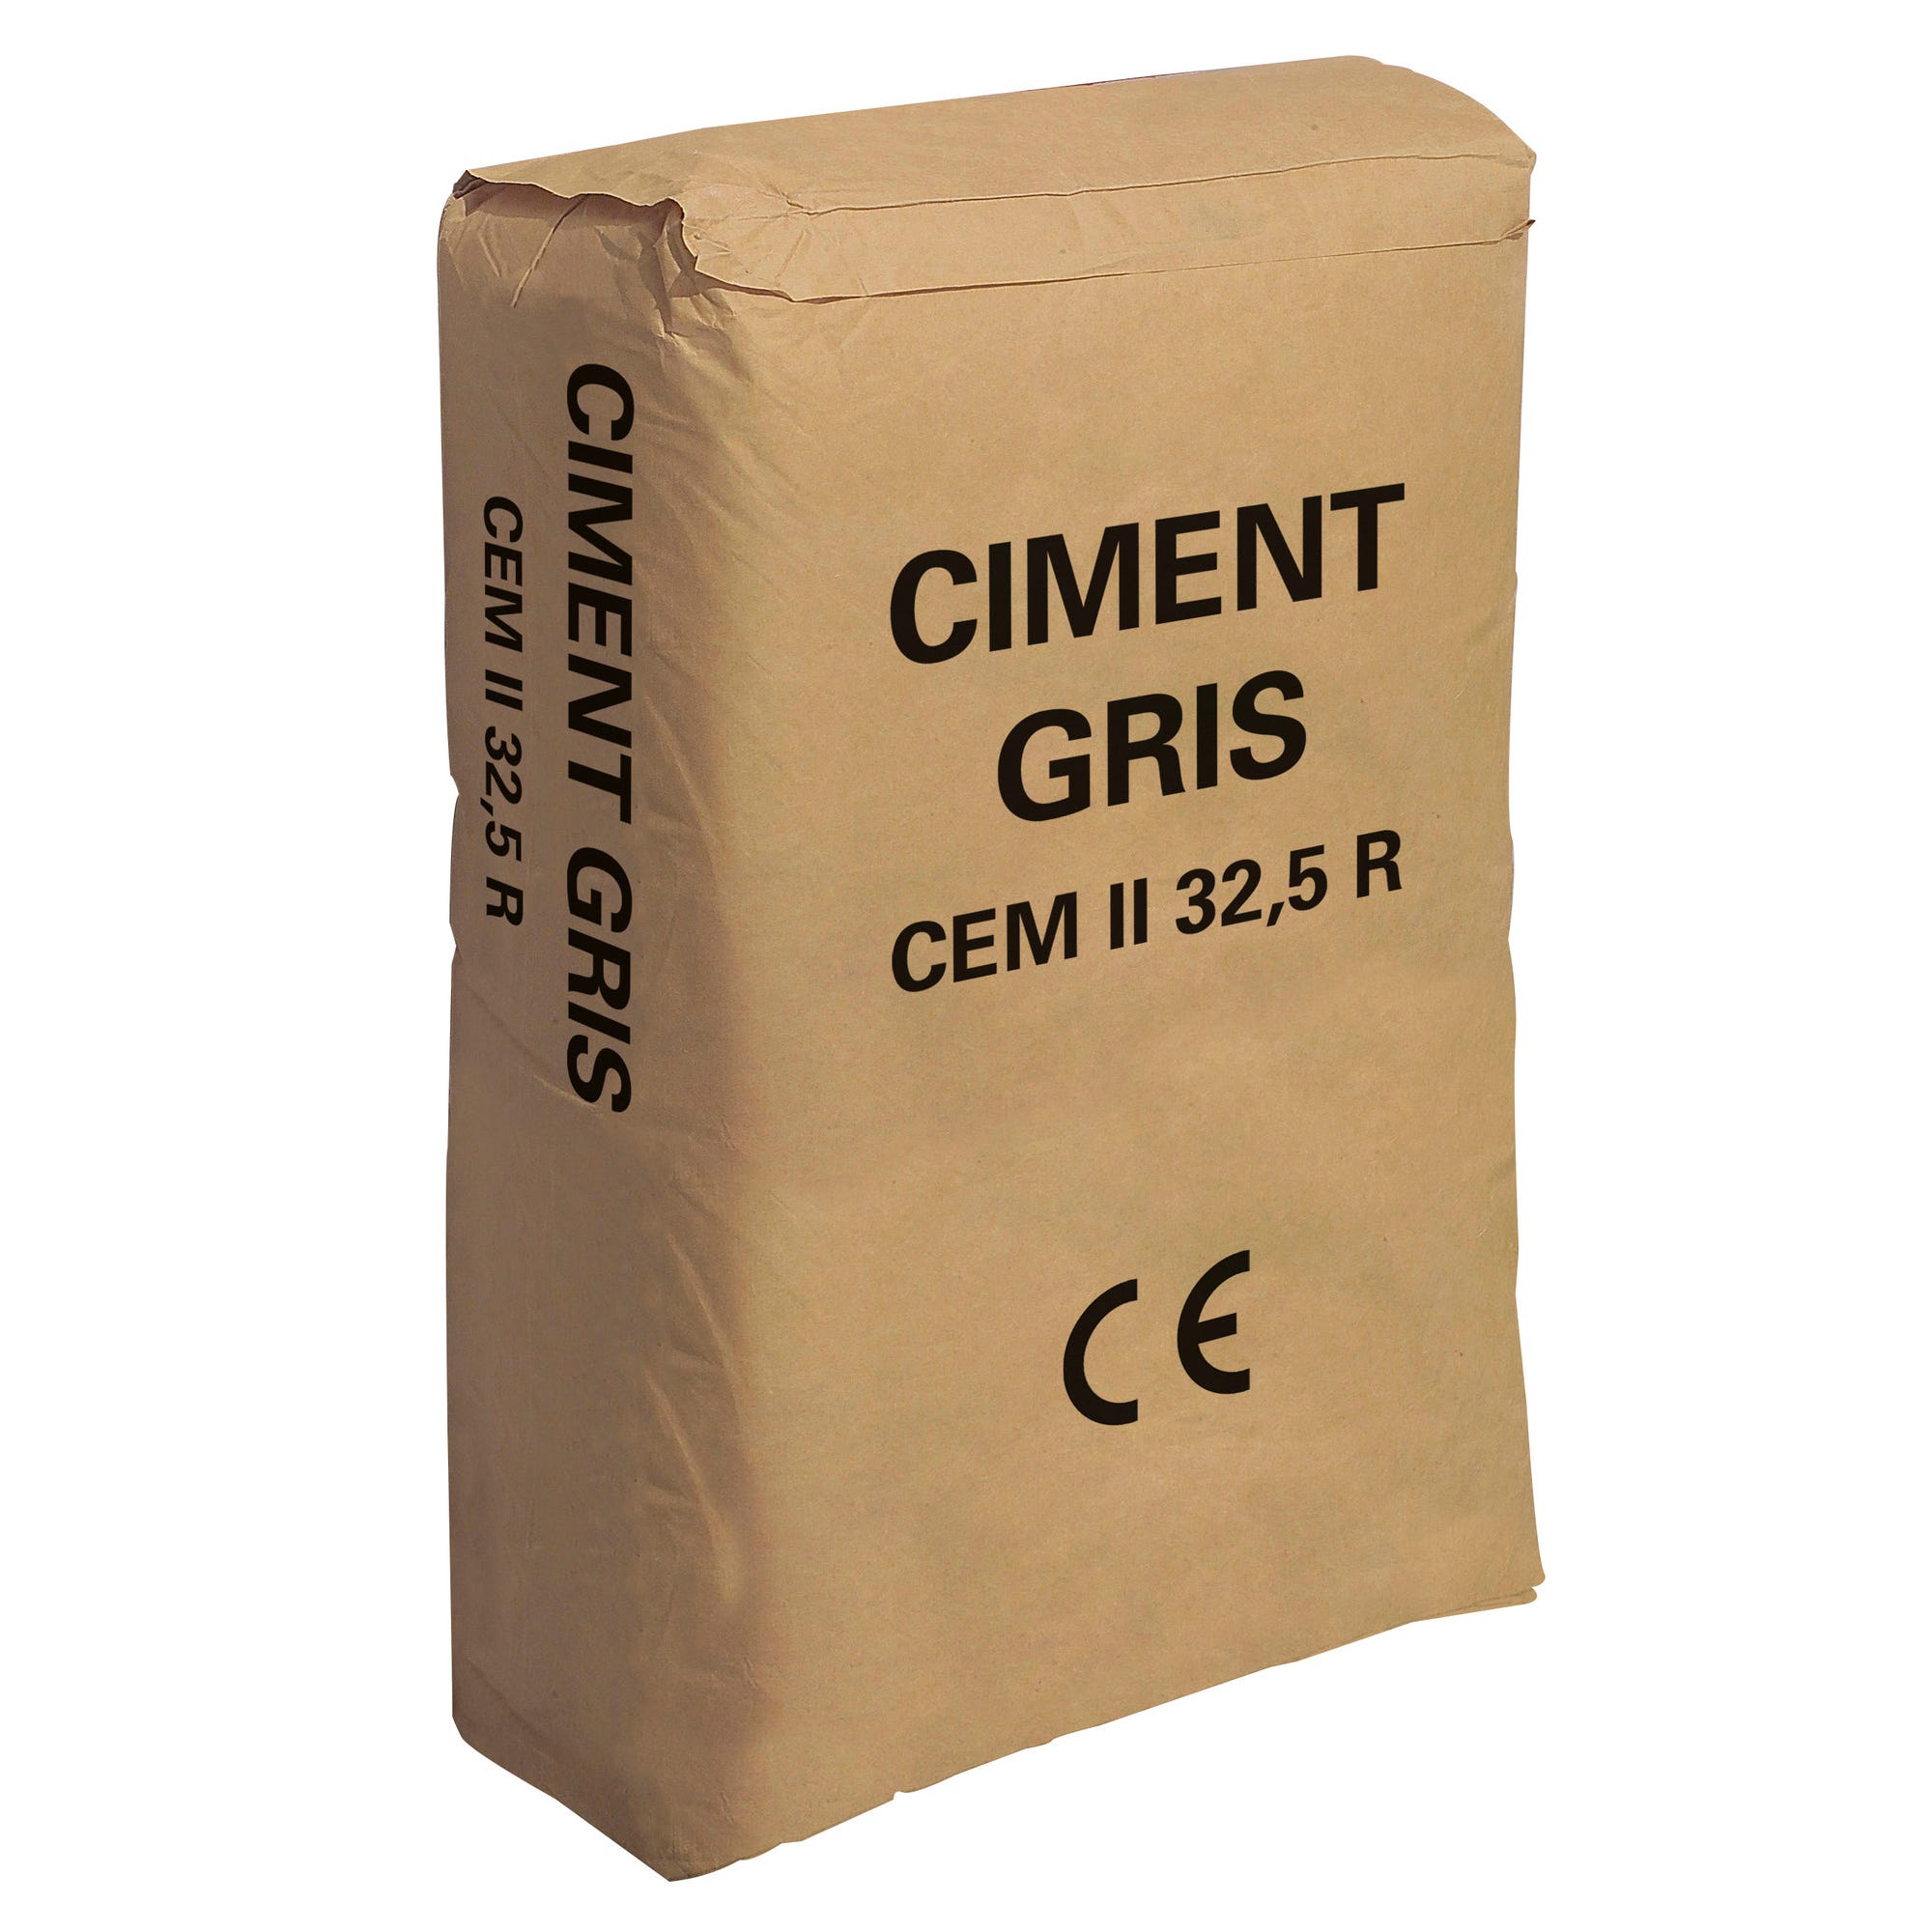 Ciment gris CE, 35 kg Vrac du nord 1